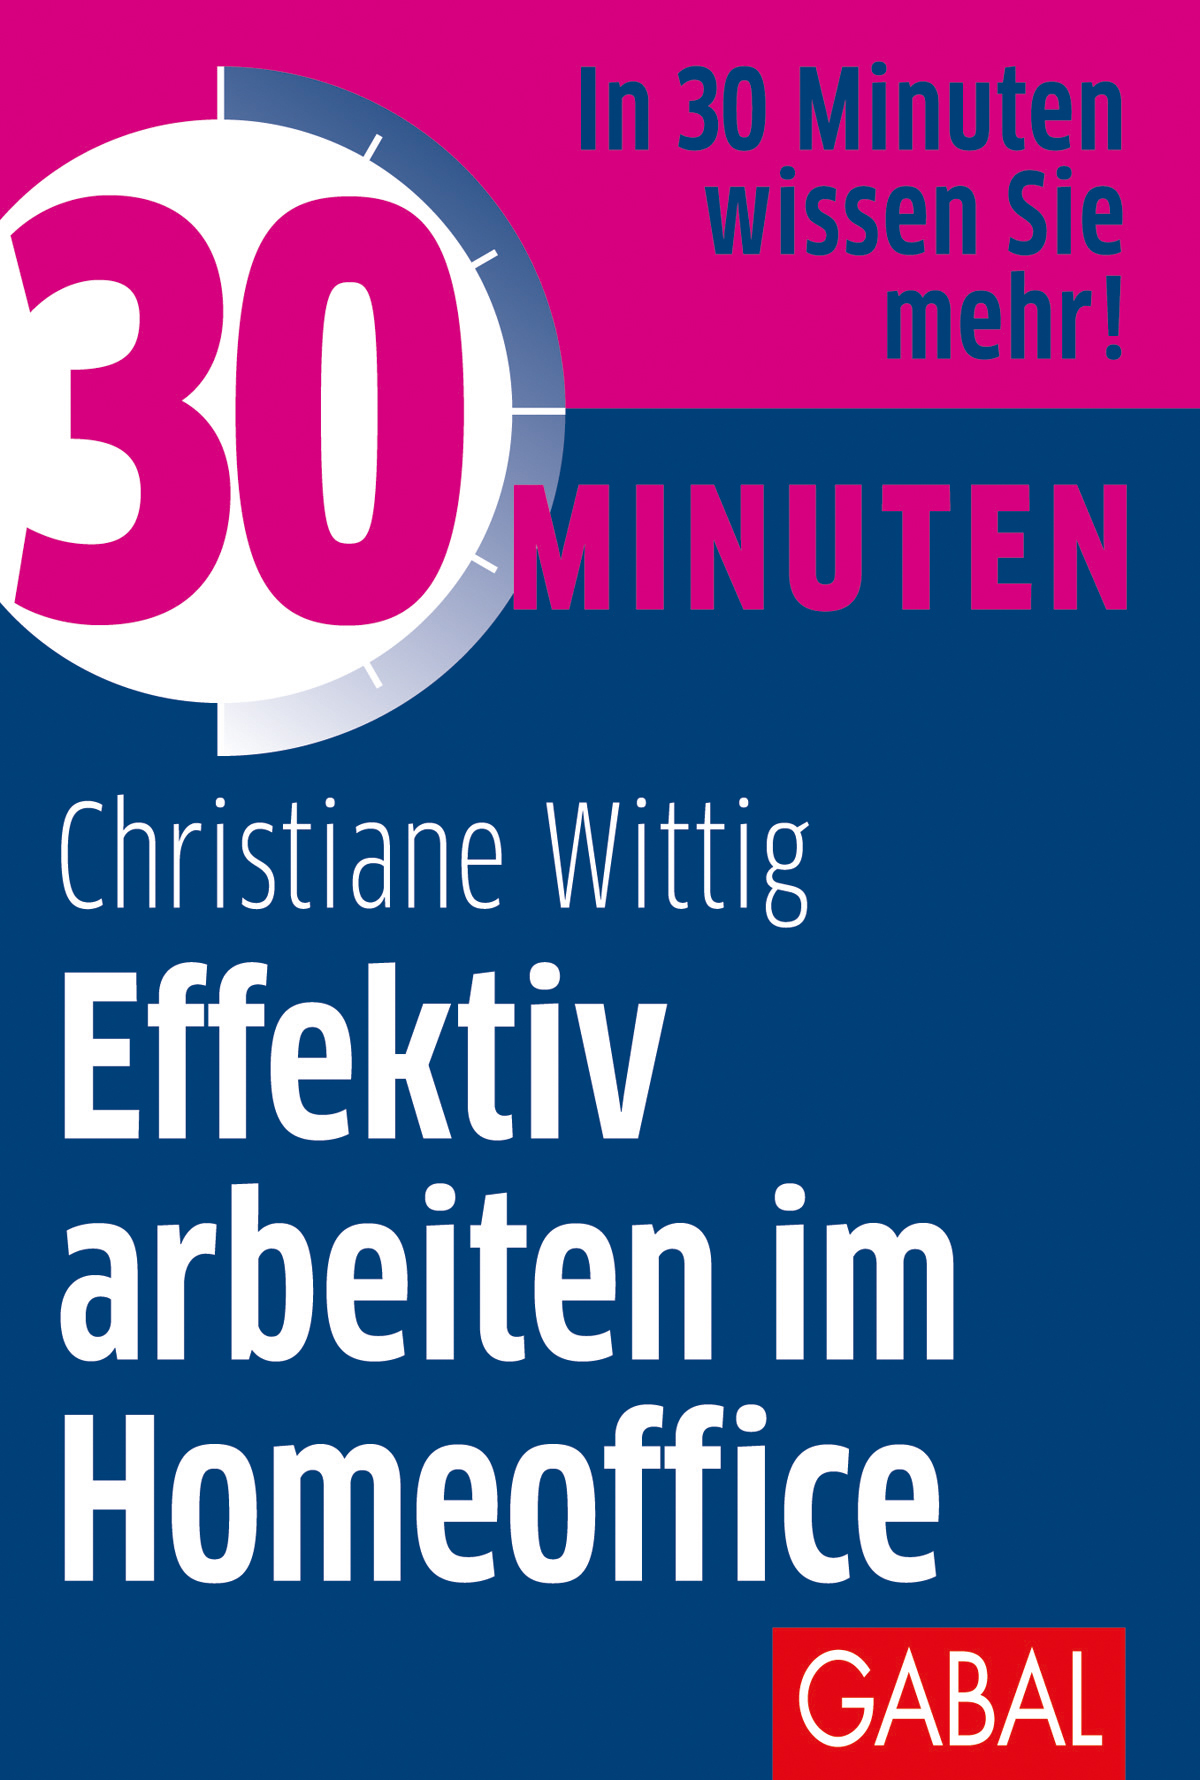 Christiane Wittig / 30 Minuten Effektiv arbeiten im Homeoffice - Bild 1 von 1